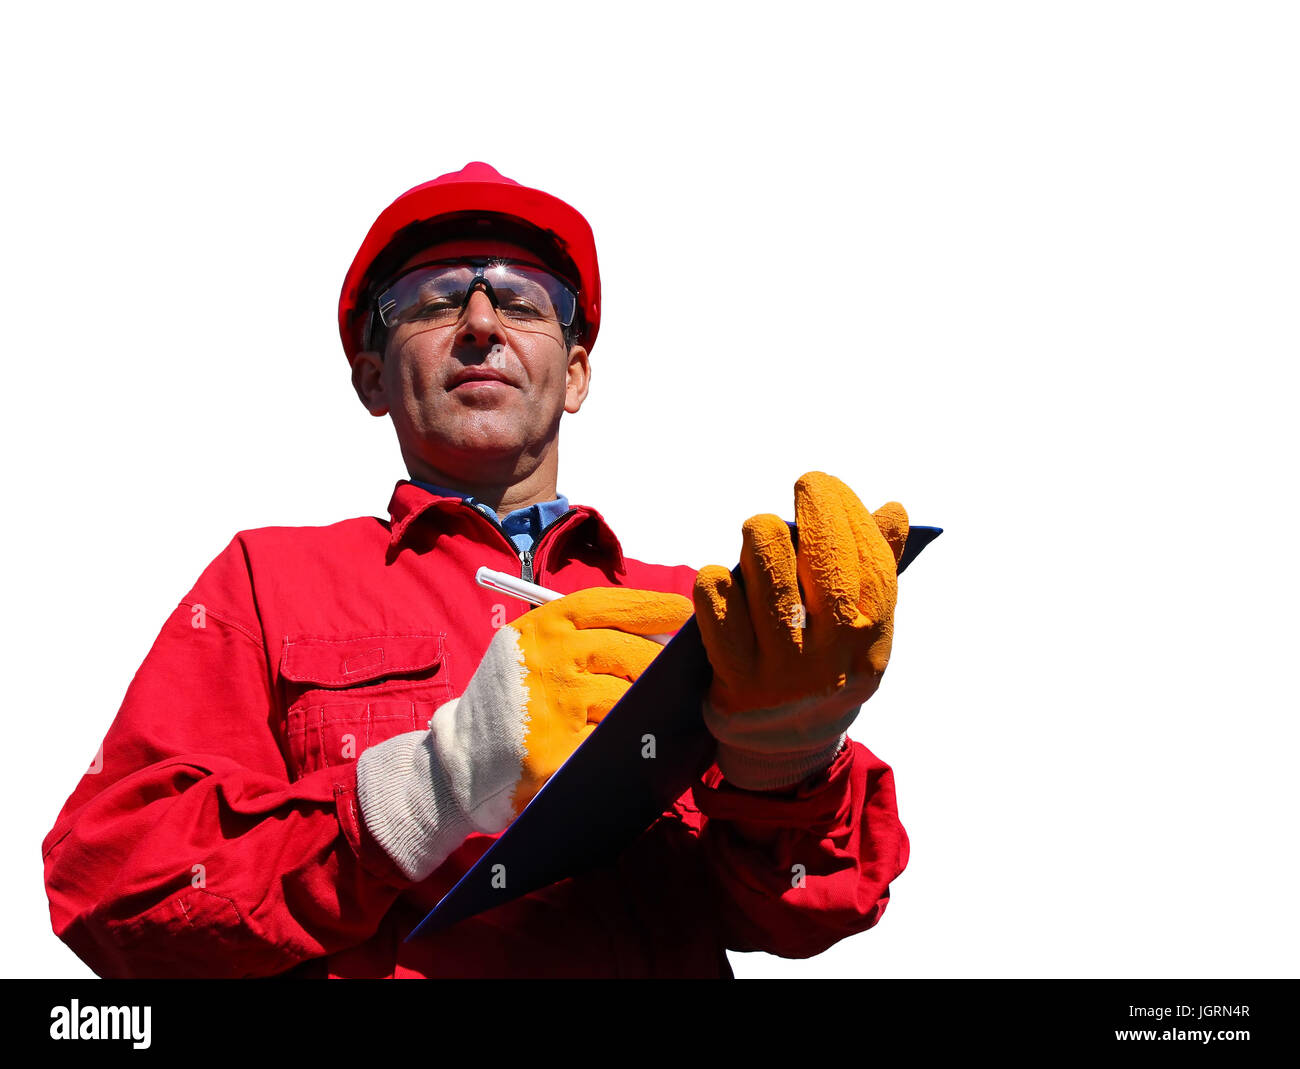 Arbeiter tragen rote Overalls und Bauarbeiterhelm, schreiben in Zwischenablage neben Rohrleitungen, isoliert auf weiss. Stockfoto